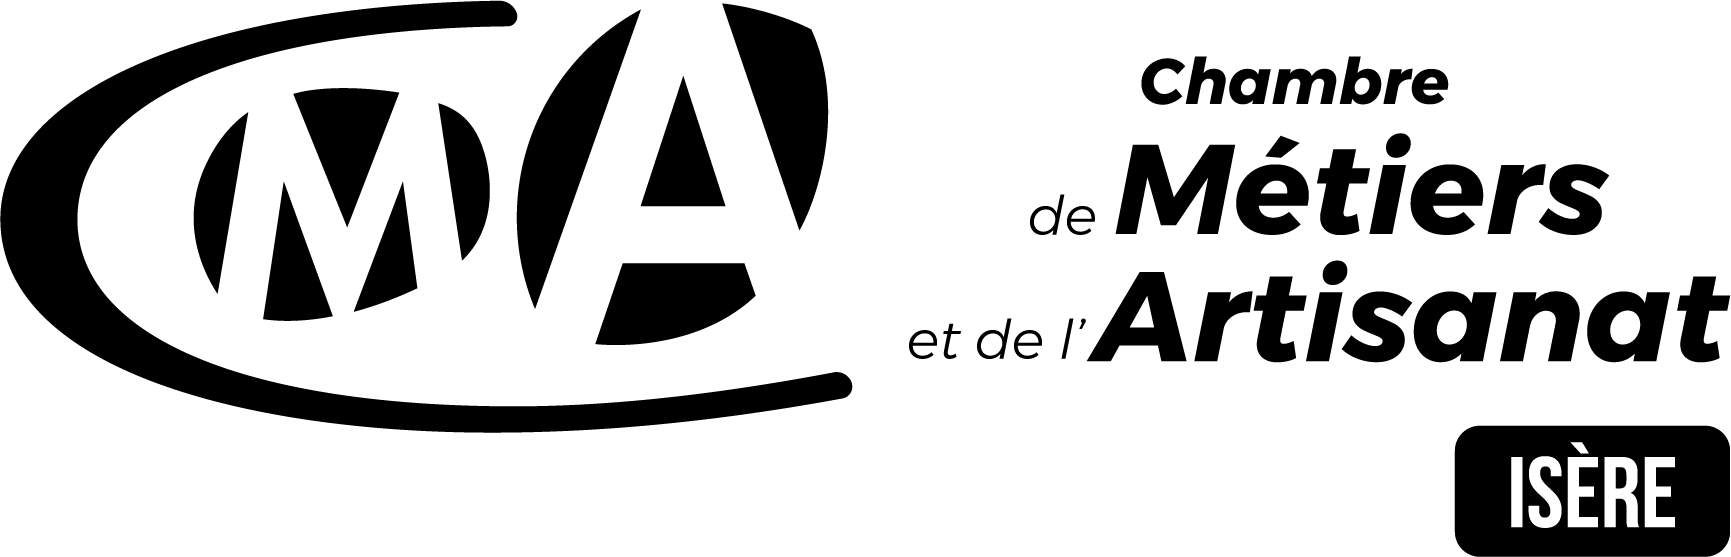 Logo_cmai-2021.png